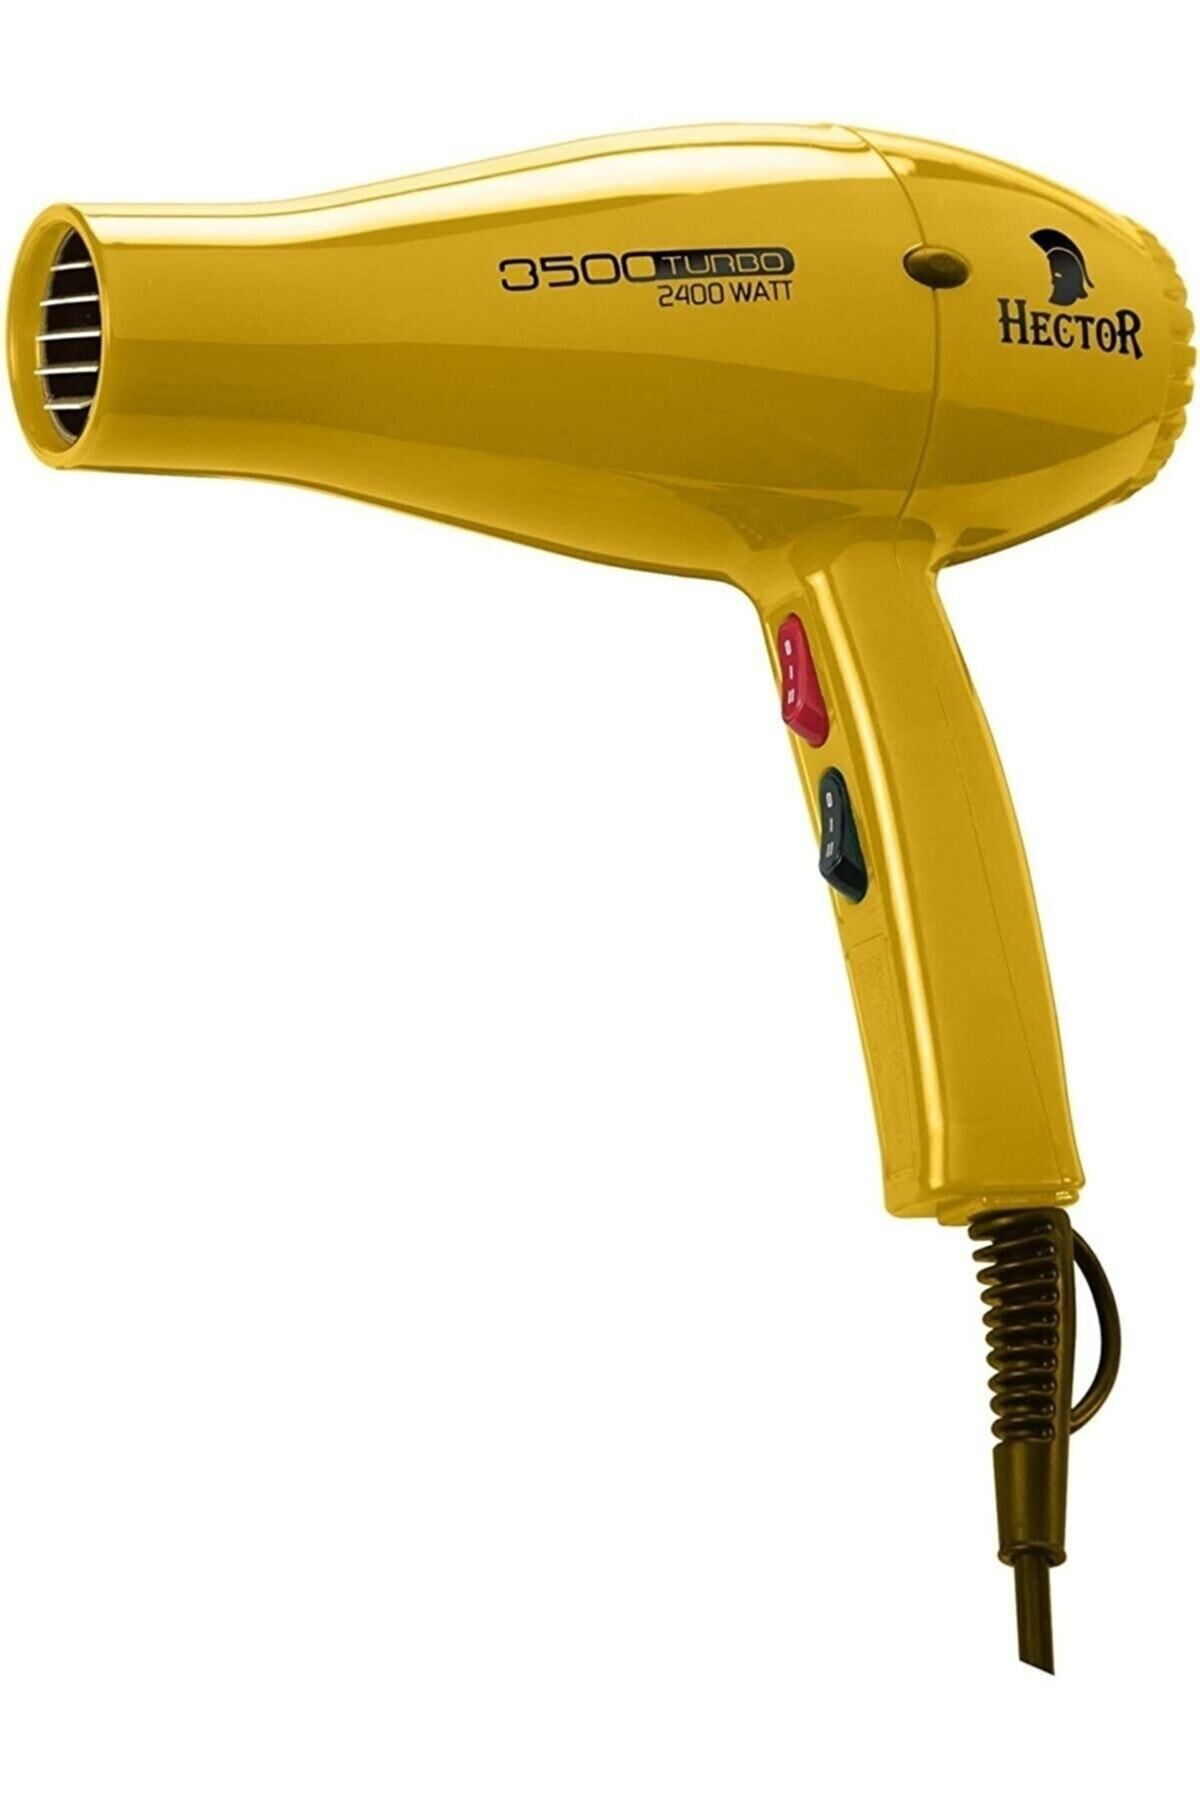 Hector Professional 3500 Turbo Blow Dryer 2400 Watt Yellow HairDryer29